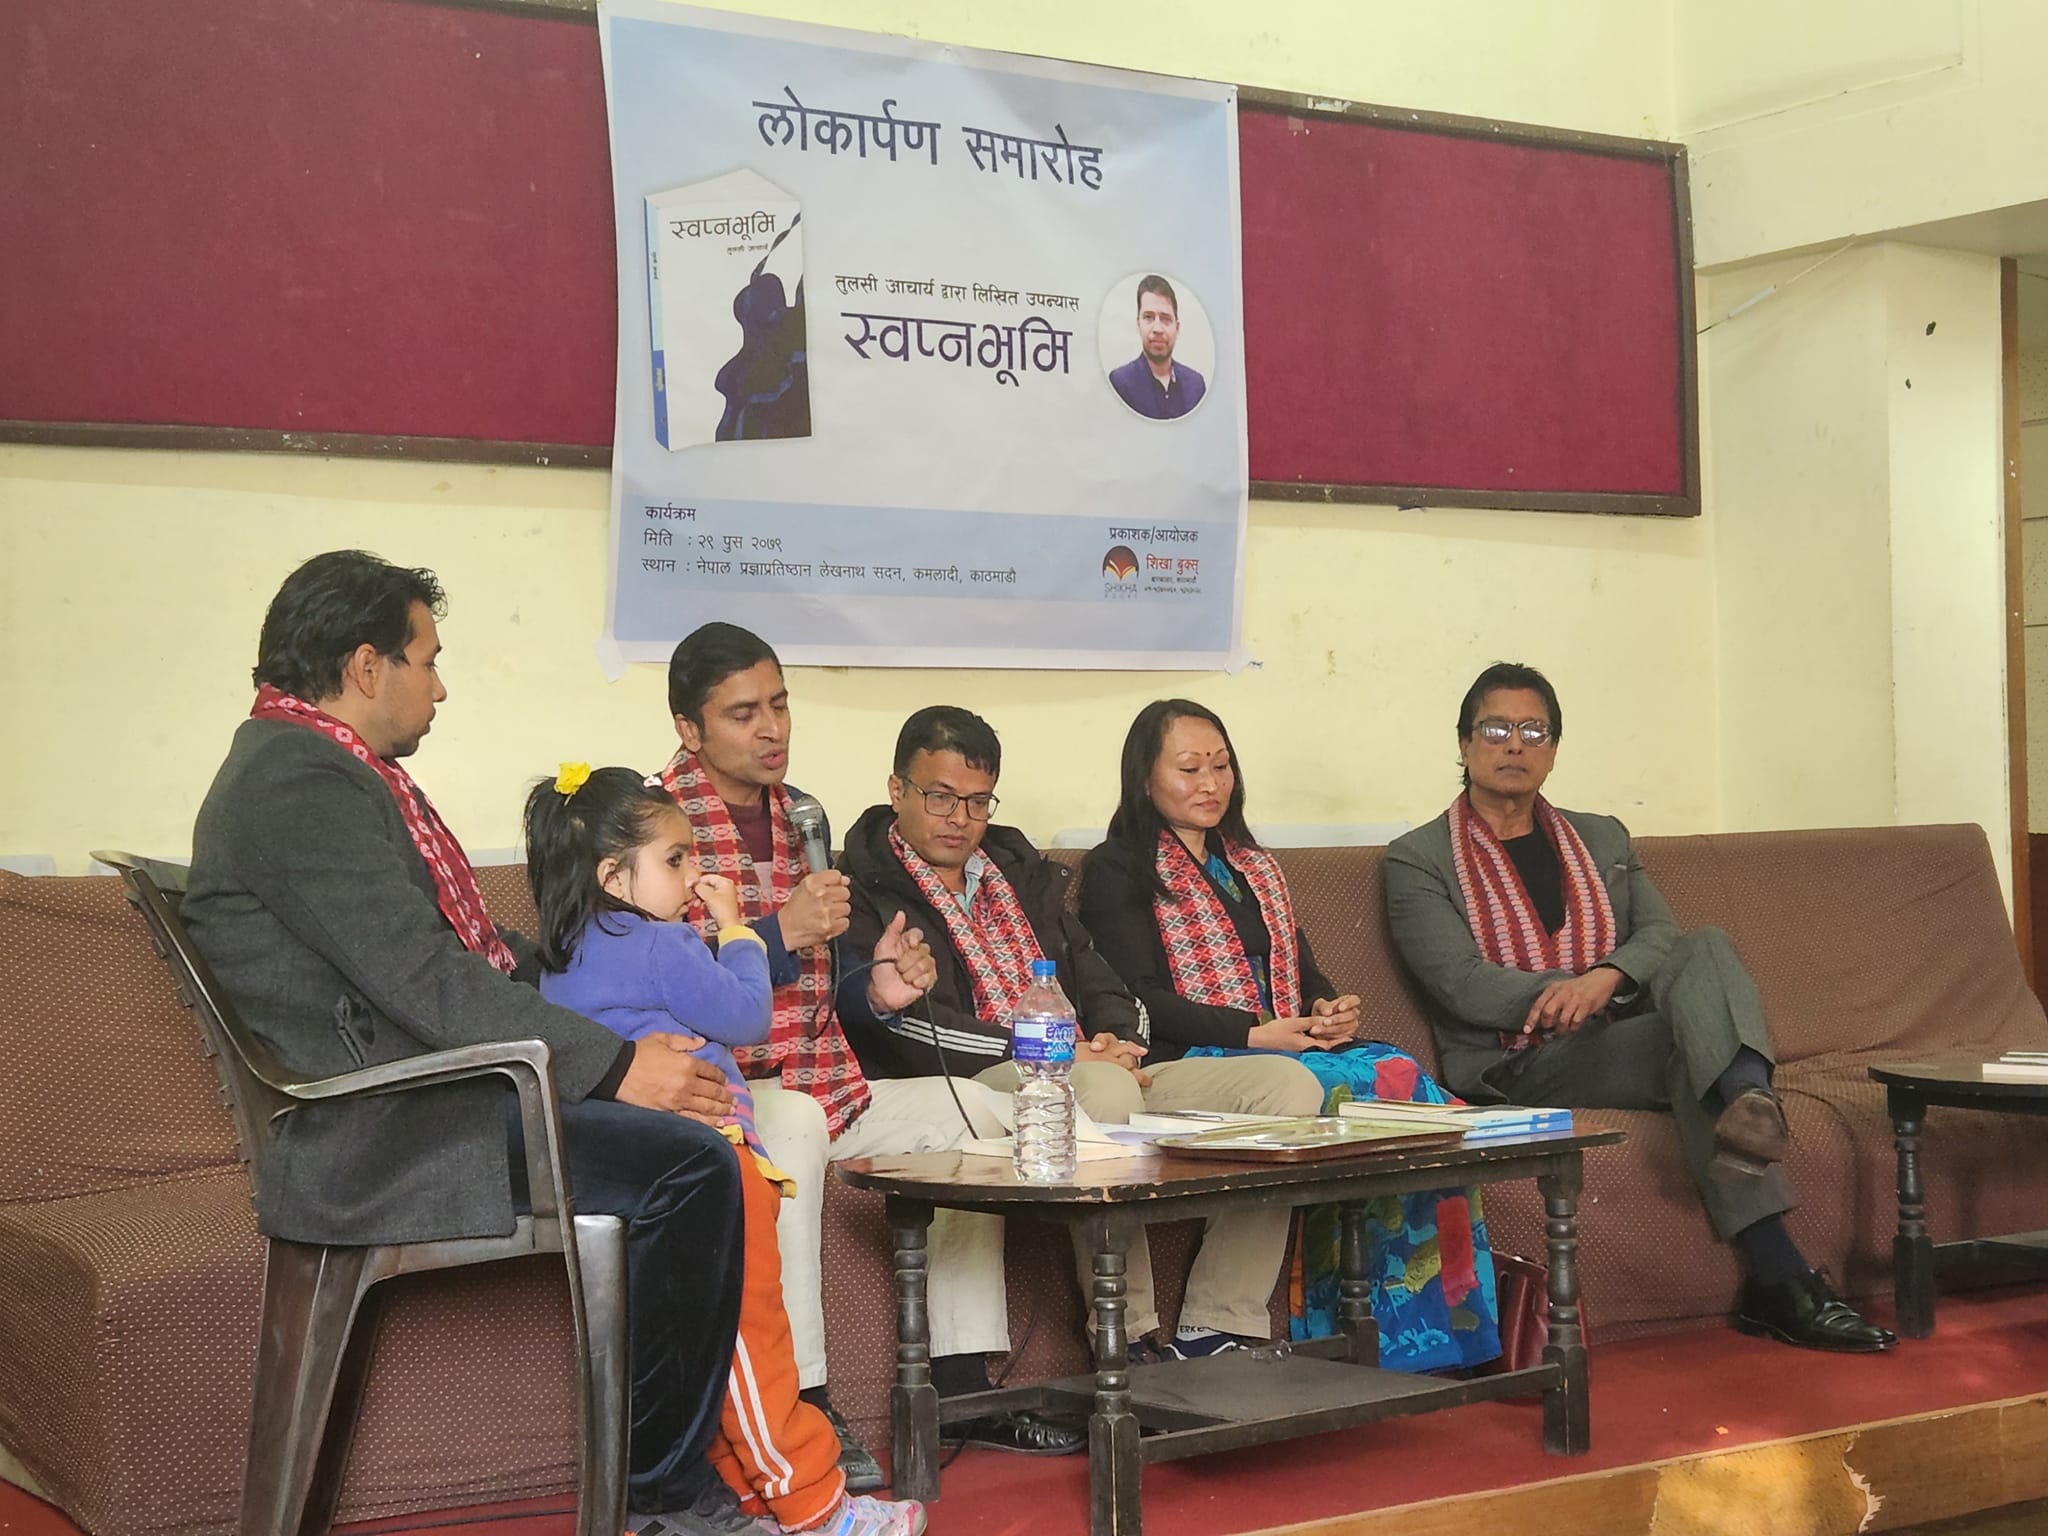 Novel Swapnabhumi launched on Friday